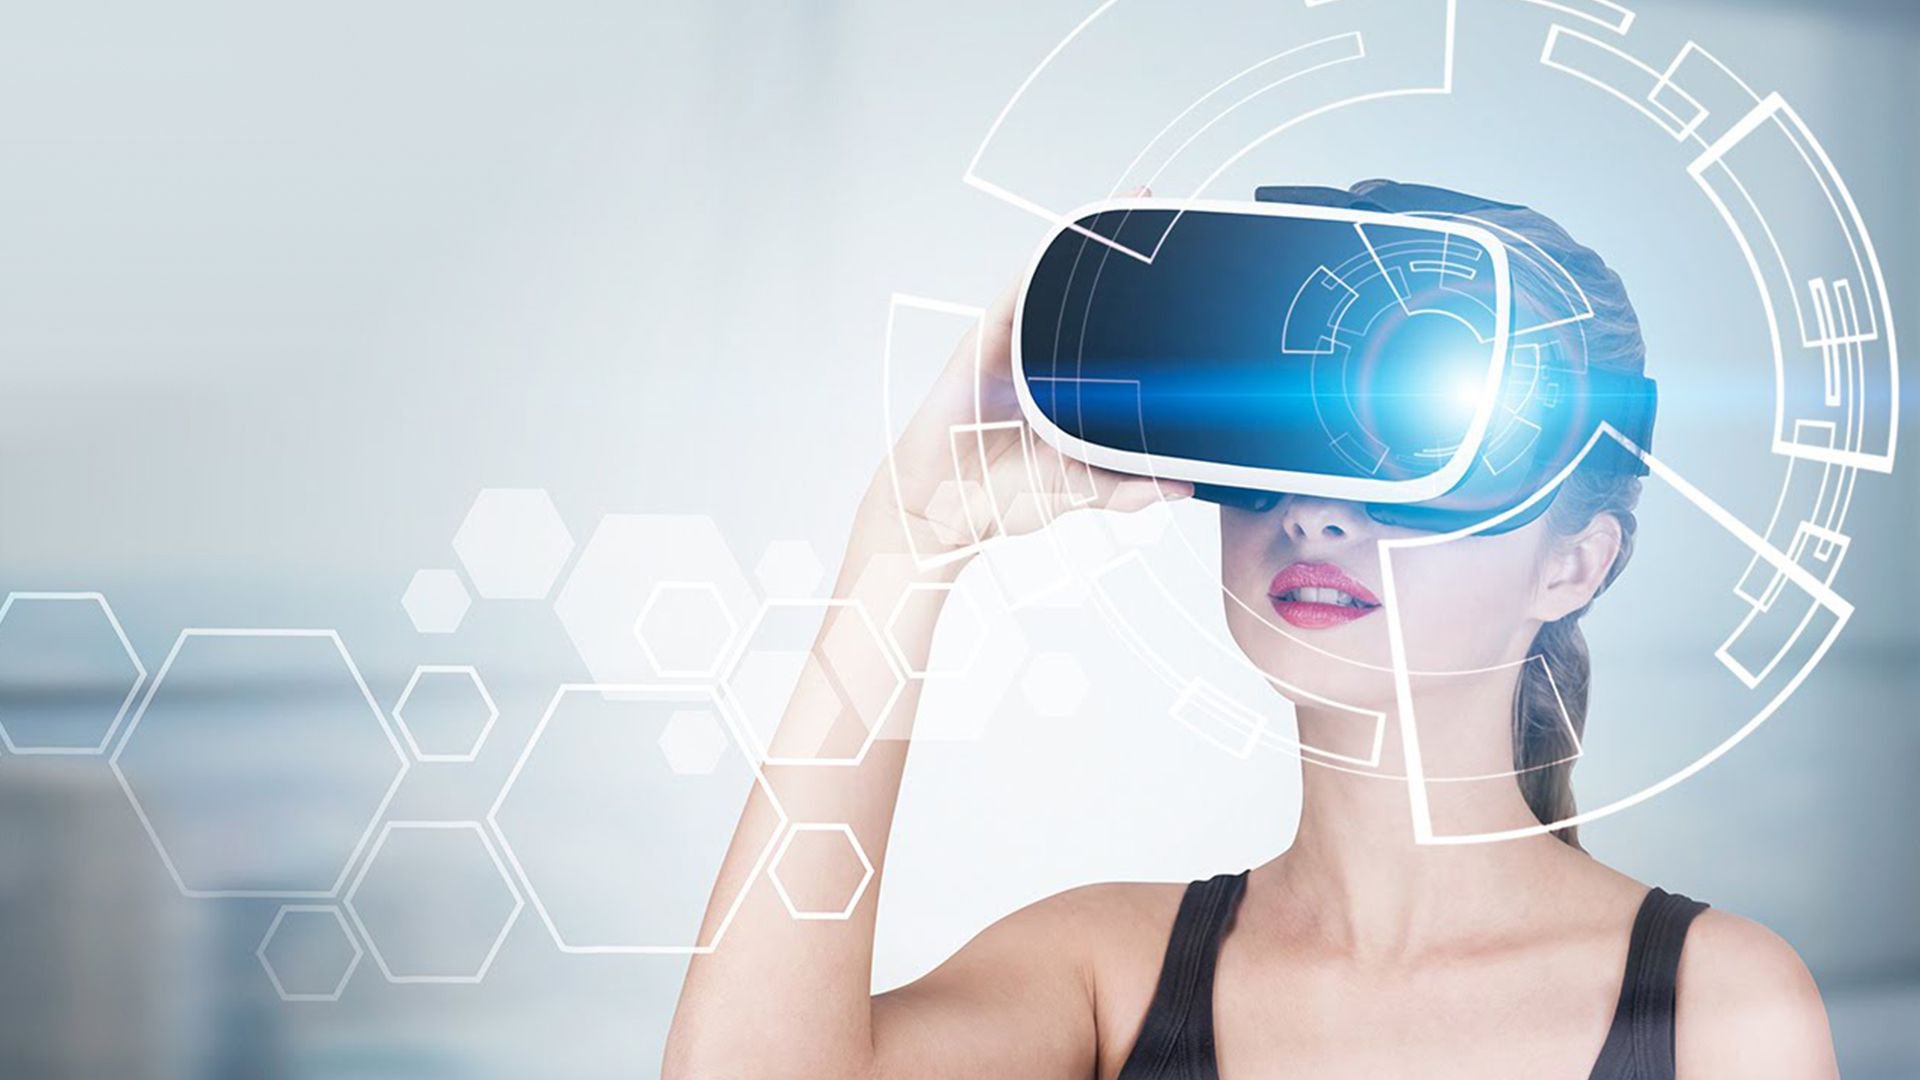 Мир виртуальности. Очки дополненной реальности. VR технологии. VR виртуальная реальность. Технологии будущего.